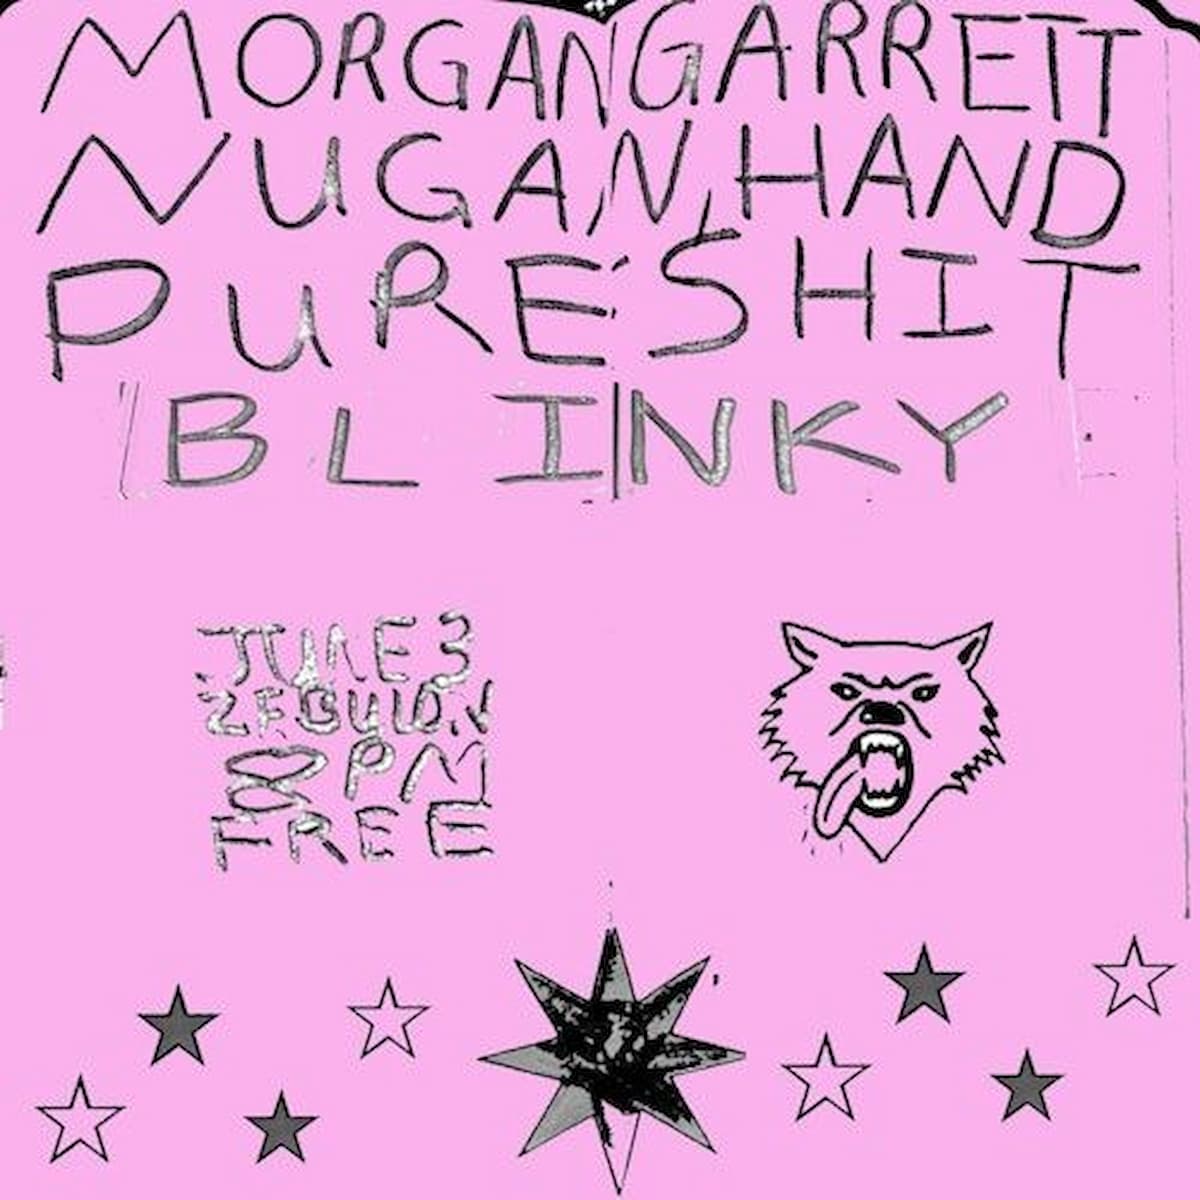 Morgan Garrett / Pure Shit / Nugan Hand / Blinky